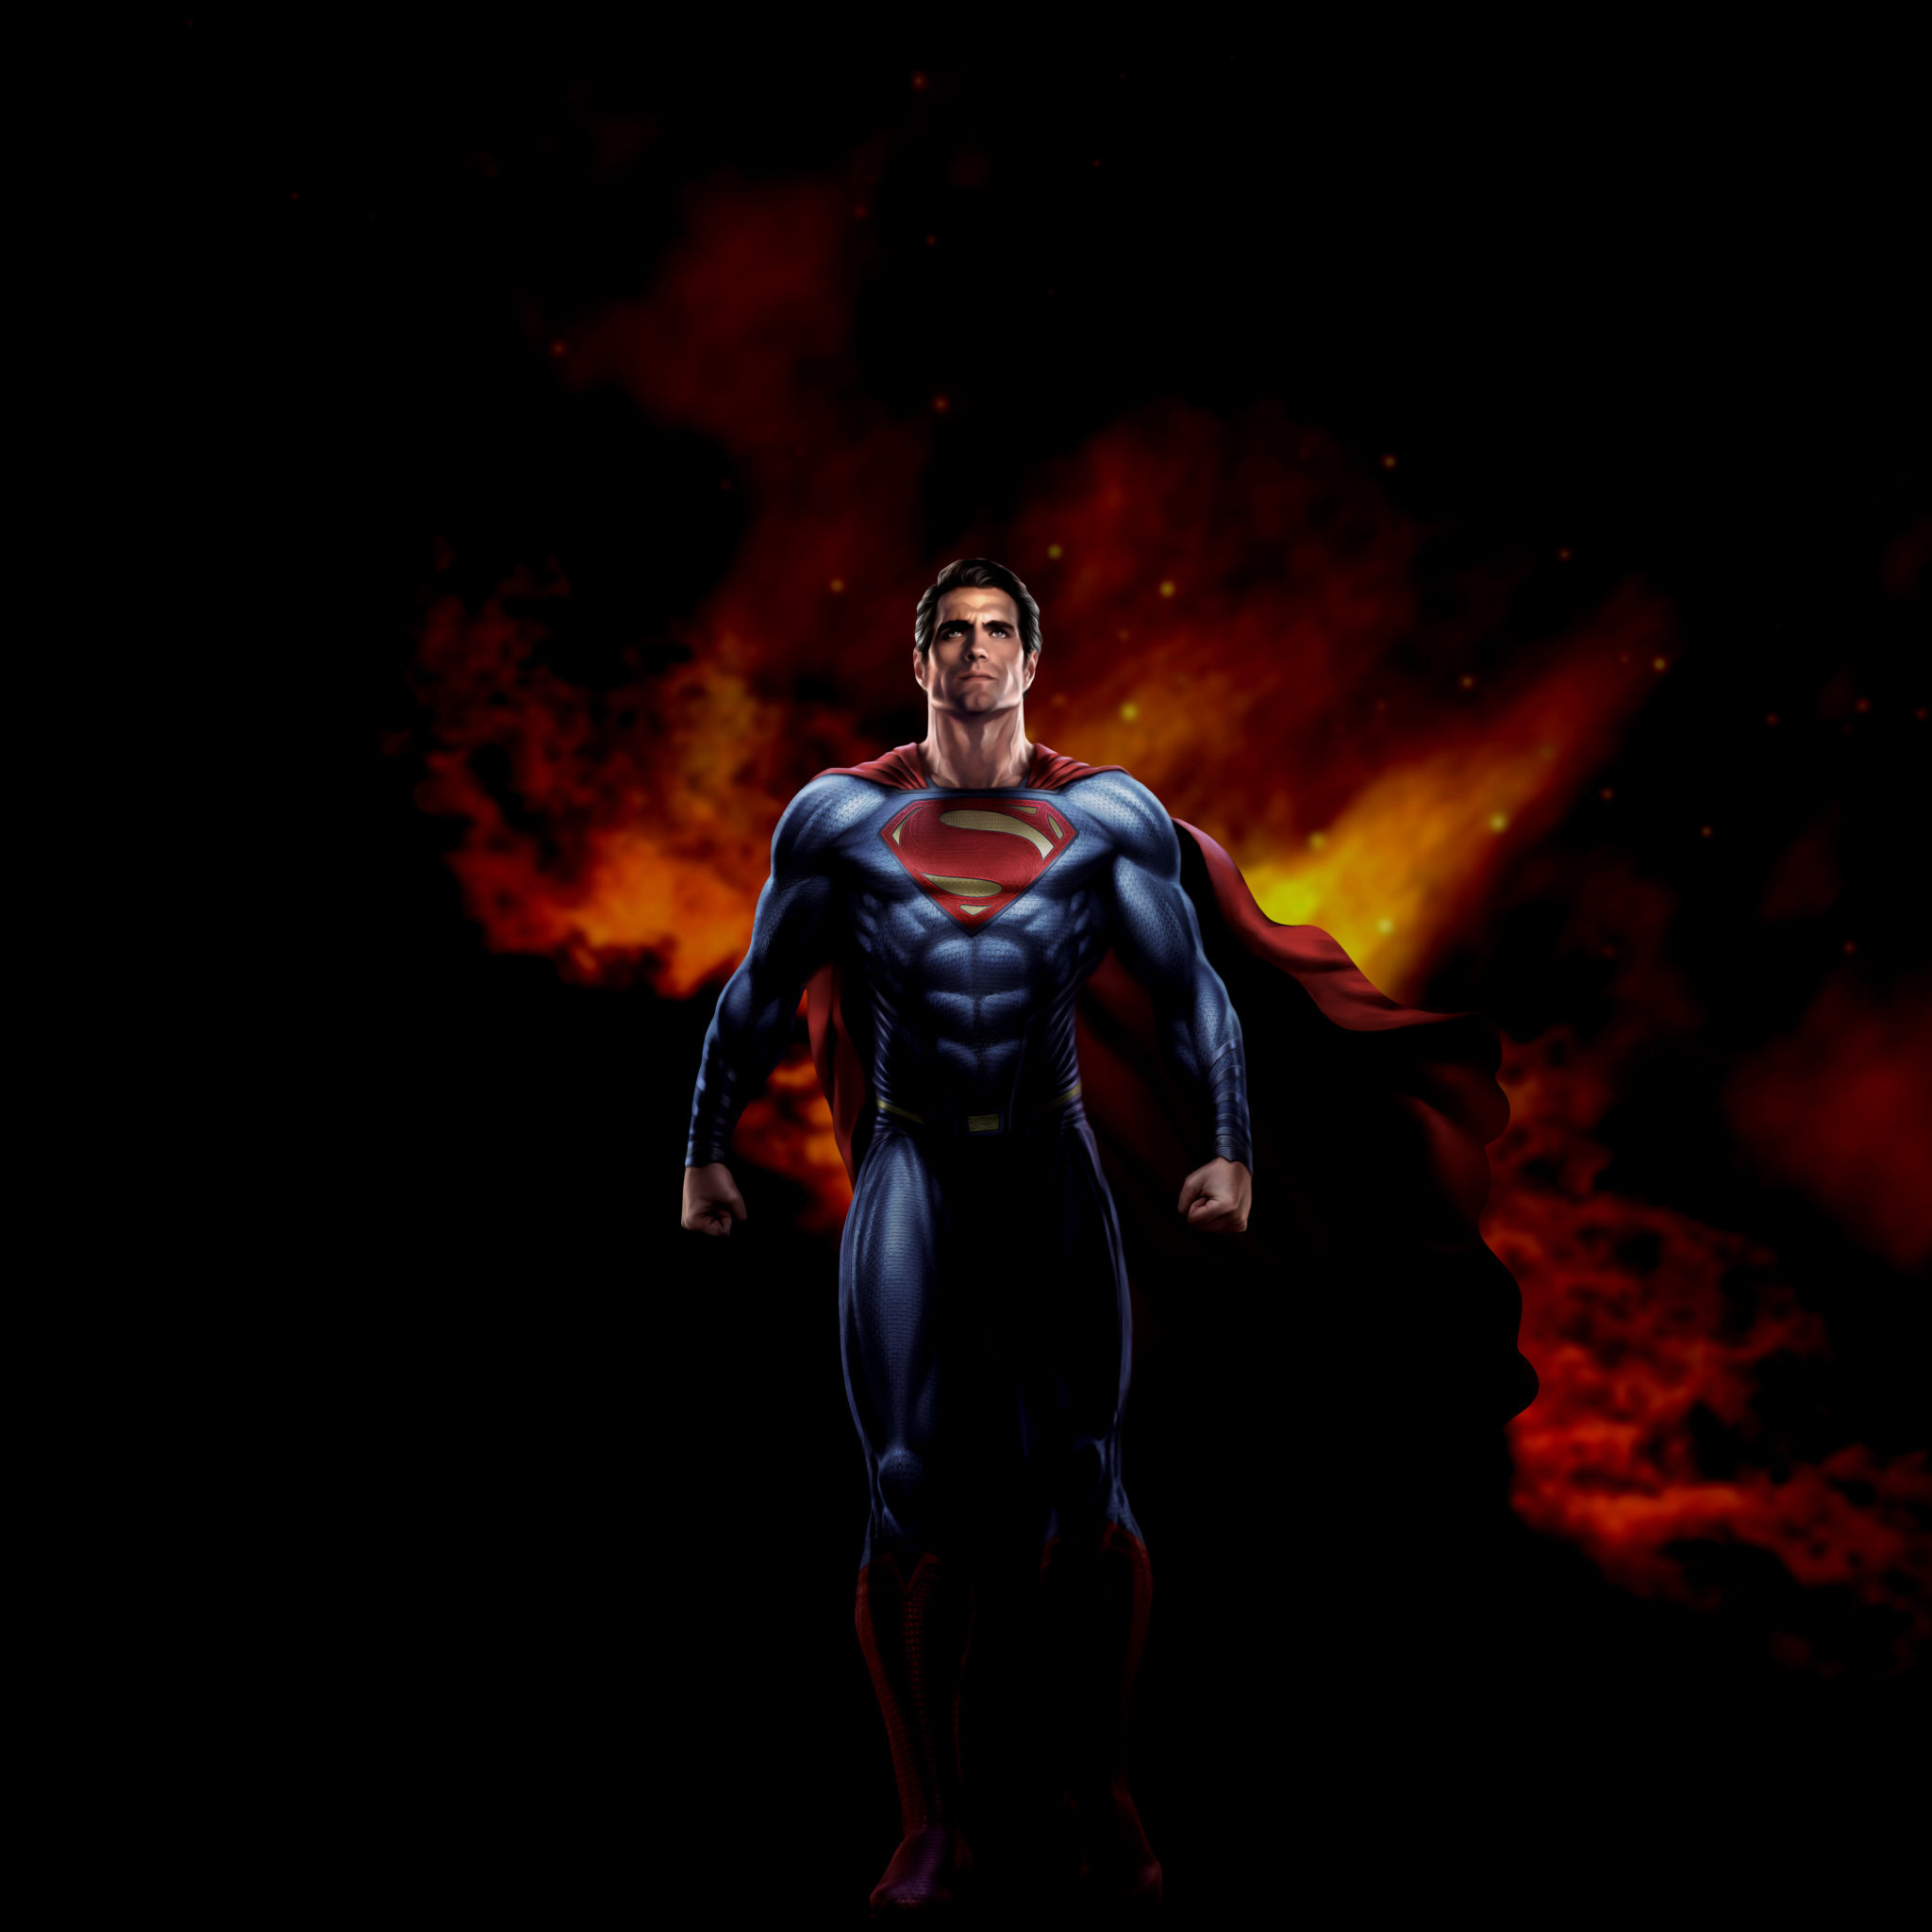 fond d'écran de super héros hd,super héros,superman,personnage fictif,ligue de justice,figurine